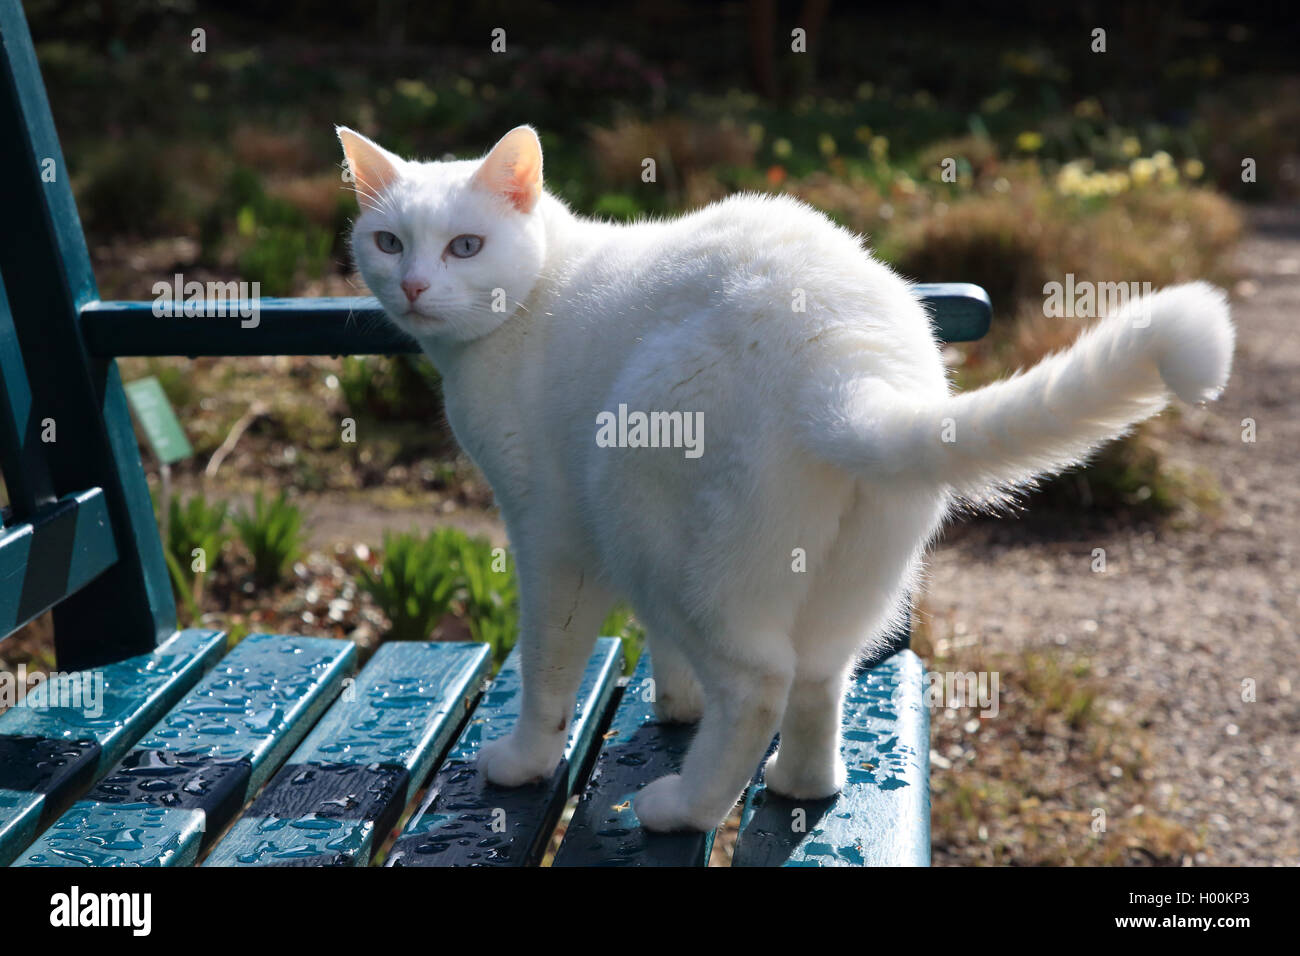 Gato doméstico, los gatos domésticos (Felis silvestris catus) f., gato blanco sobre una silla de jardín húmedo, Alemania Foto de stock